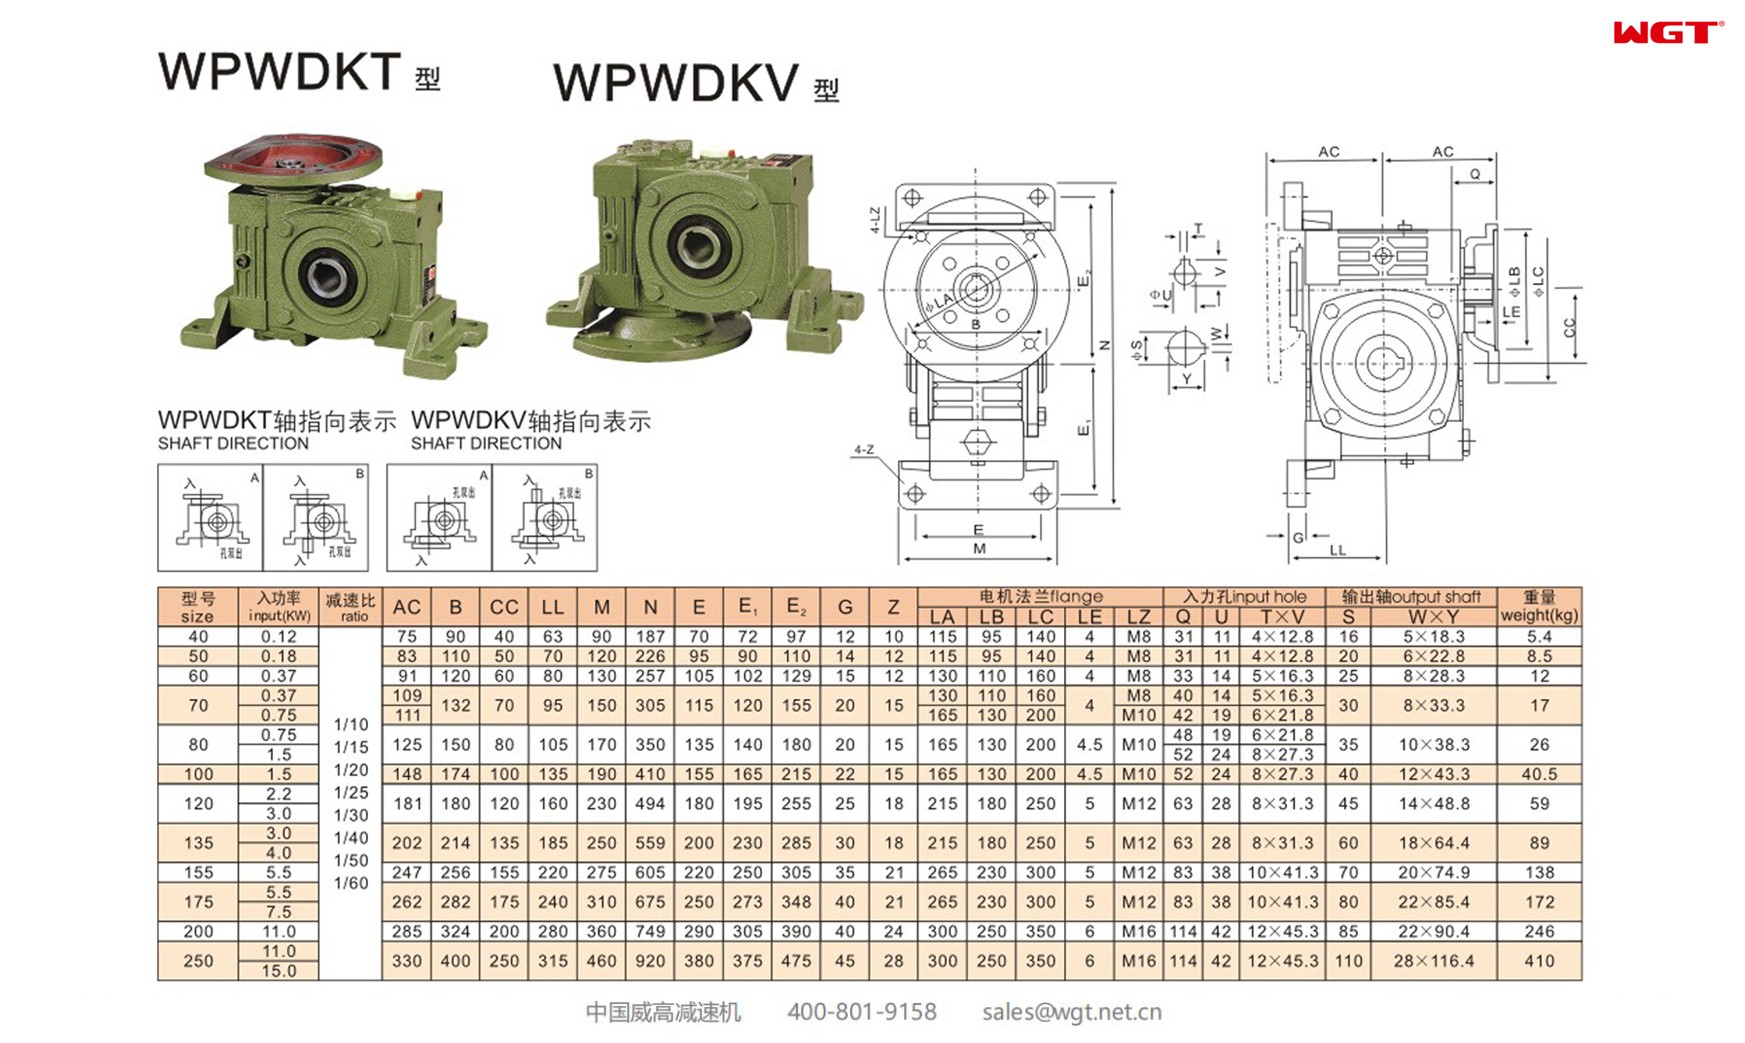 WPWDKV155 worm gear reducer universal speed reducer